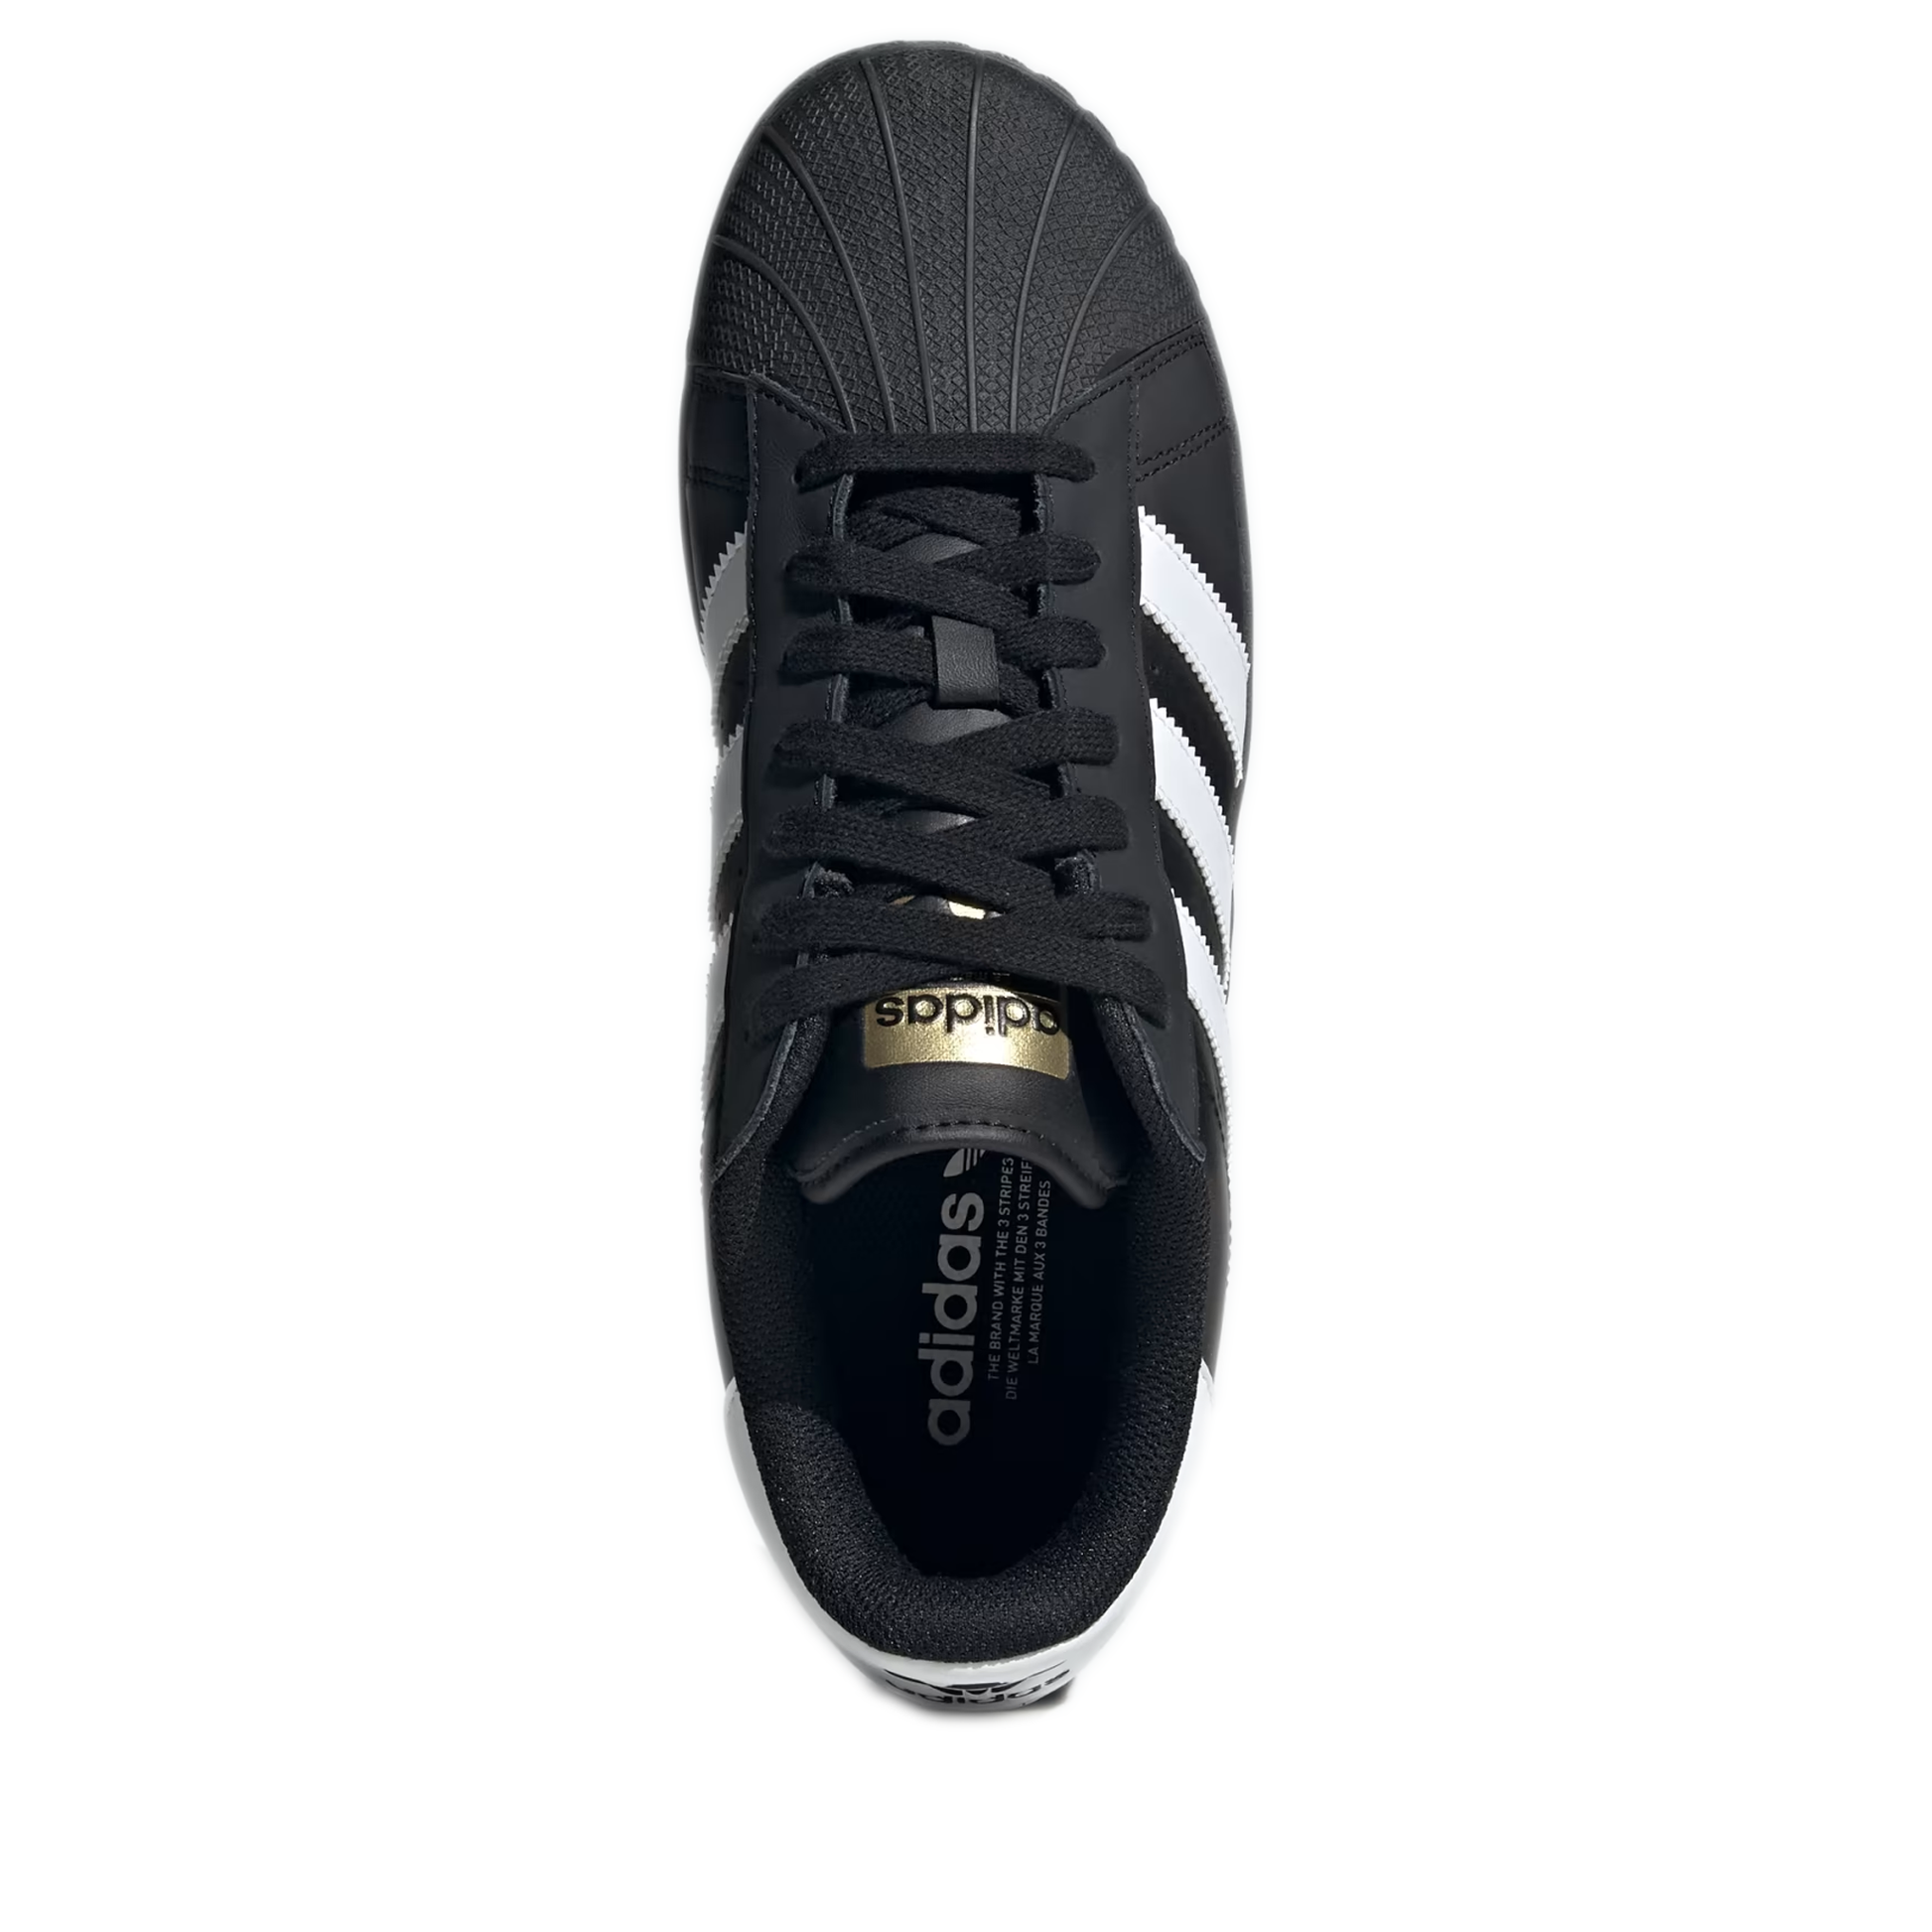 Men's shoes adidas Originals Superstar XLG Ftw White/ Core Black